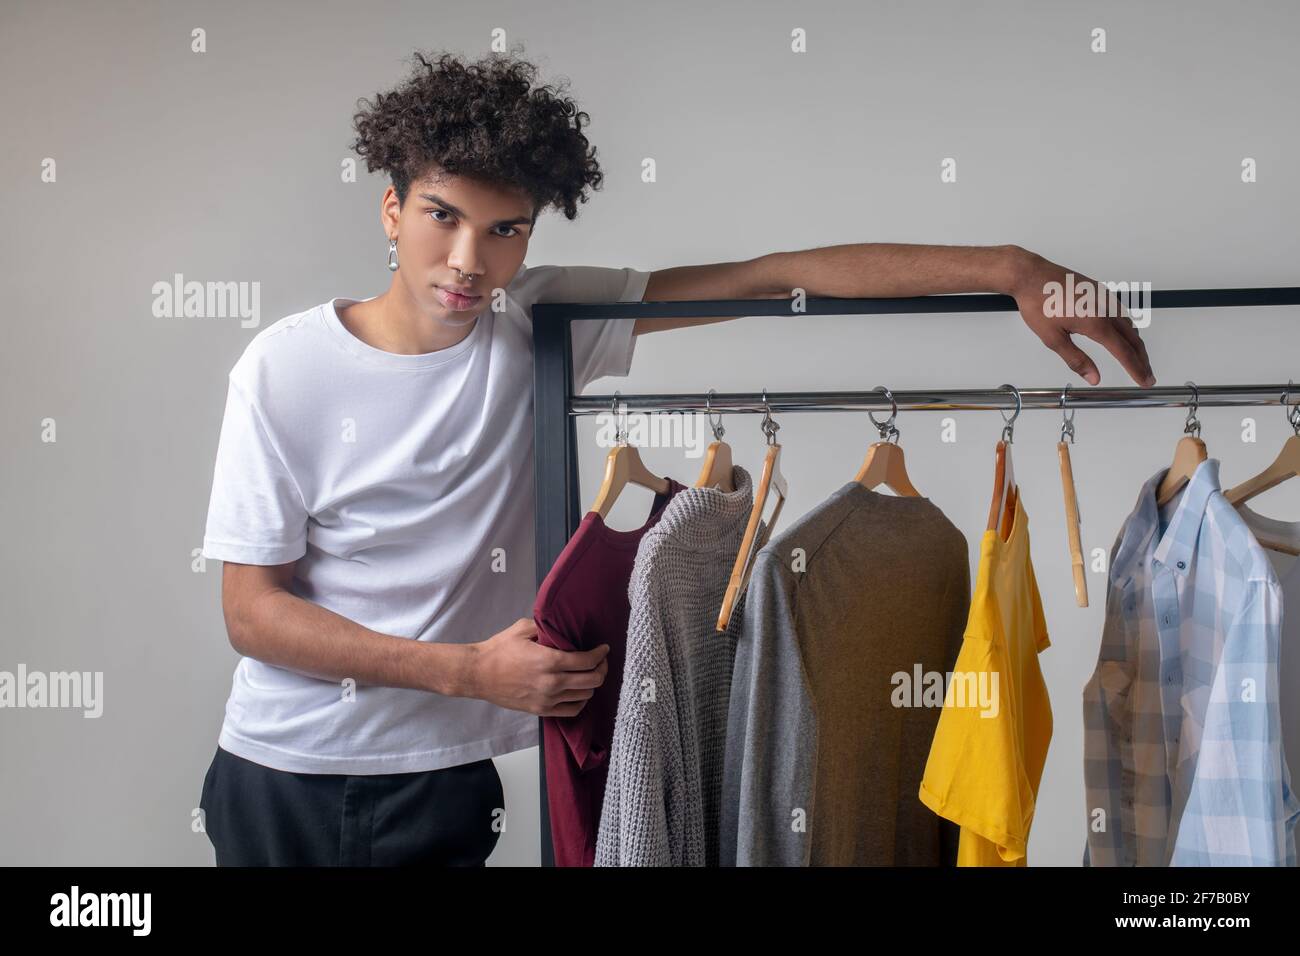 Lockiger junger Mann, der neben den Kleiderbügeln mit Kleidung steht Stockfoto